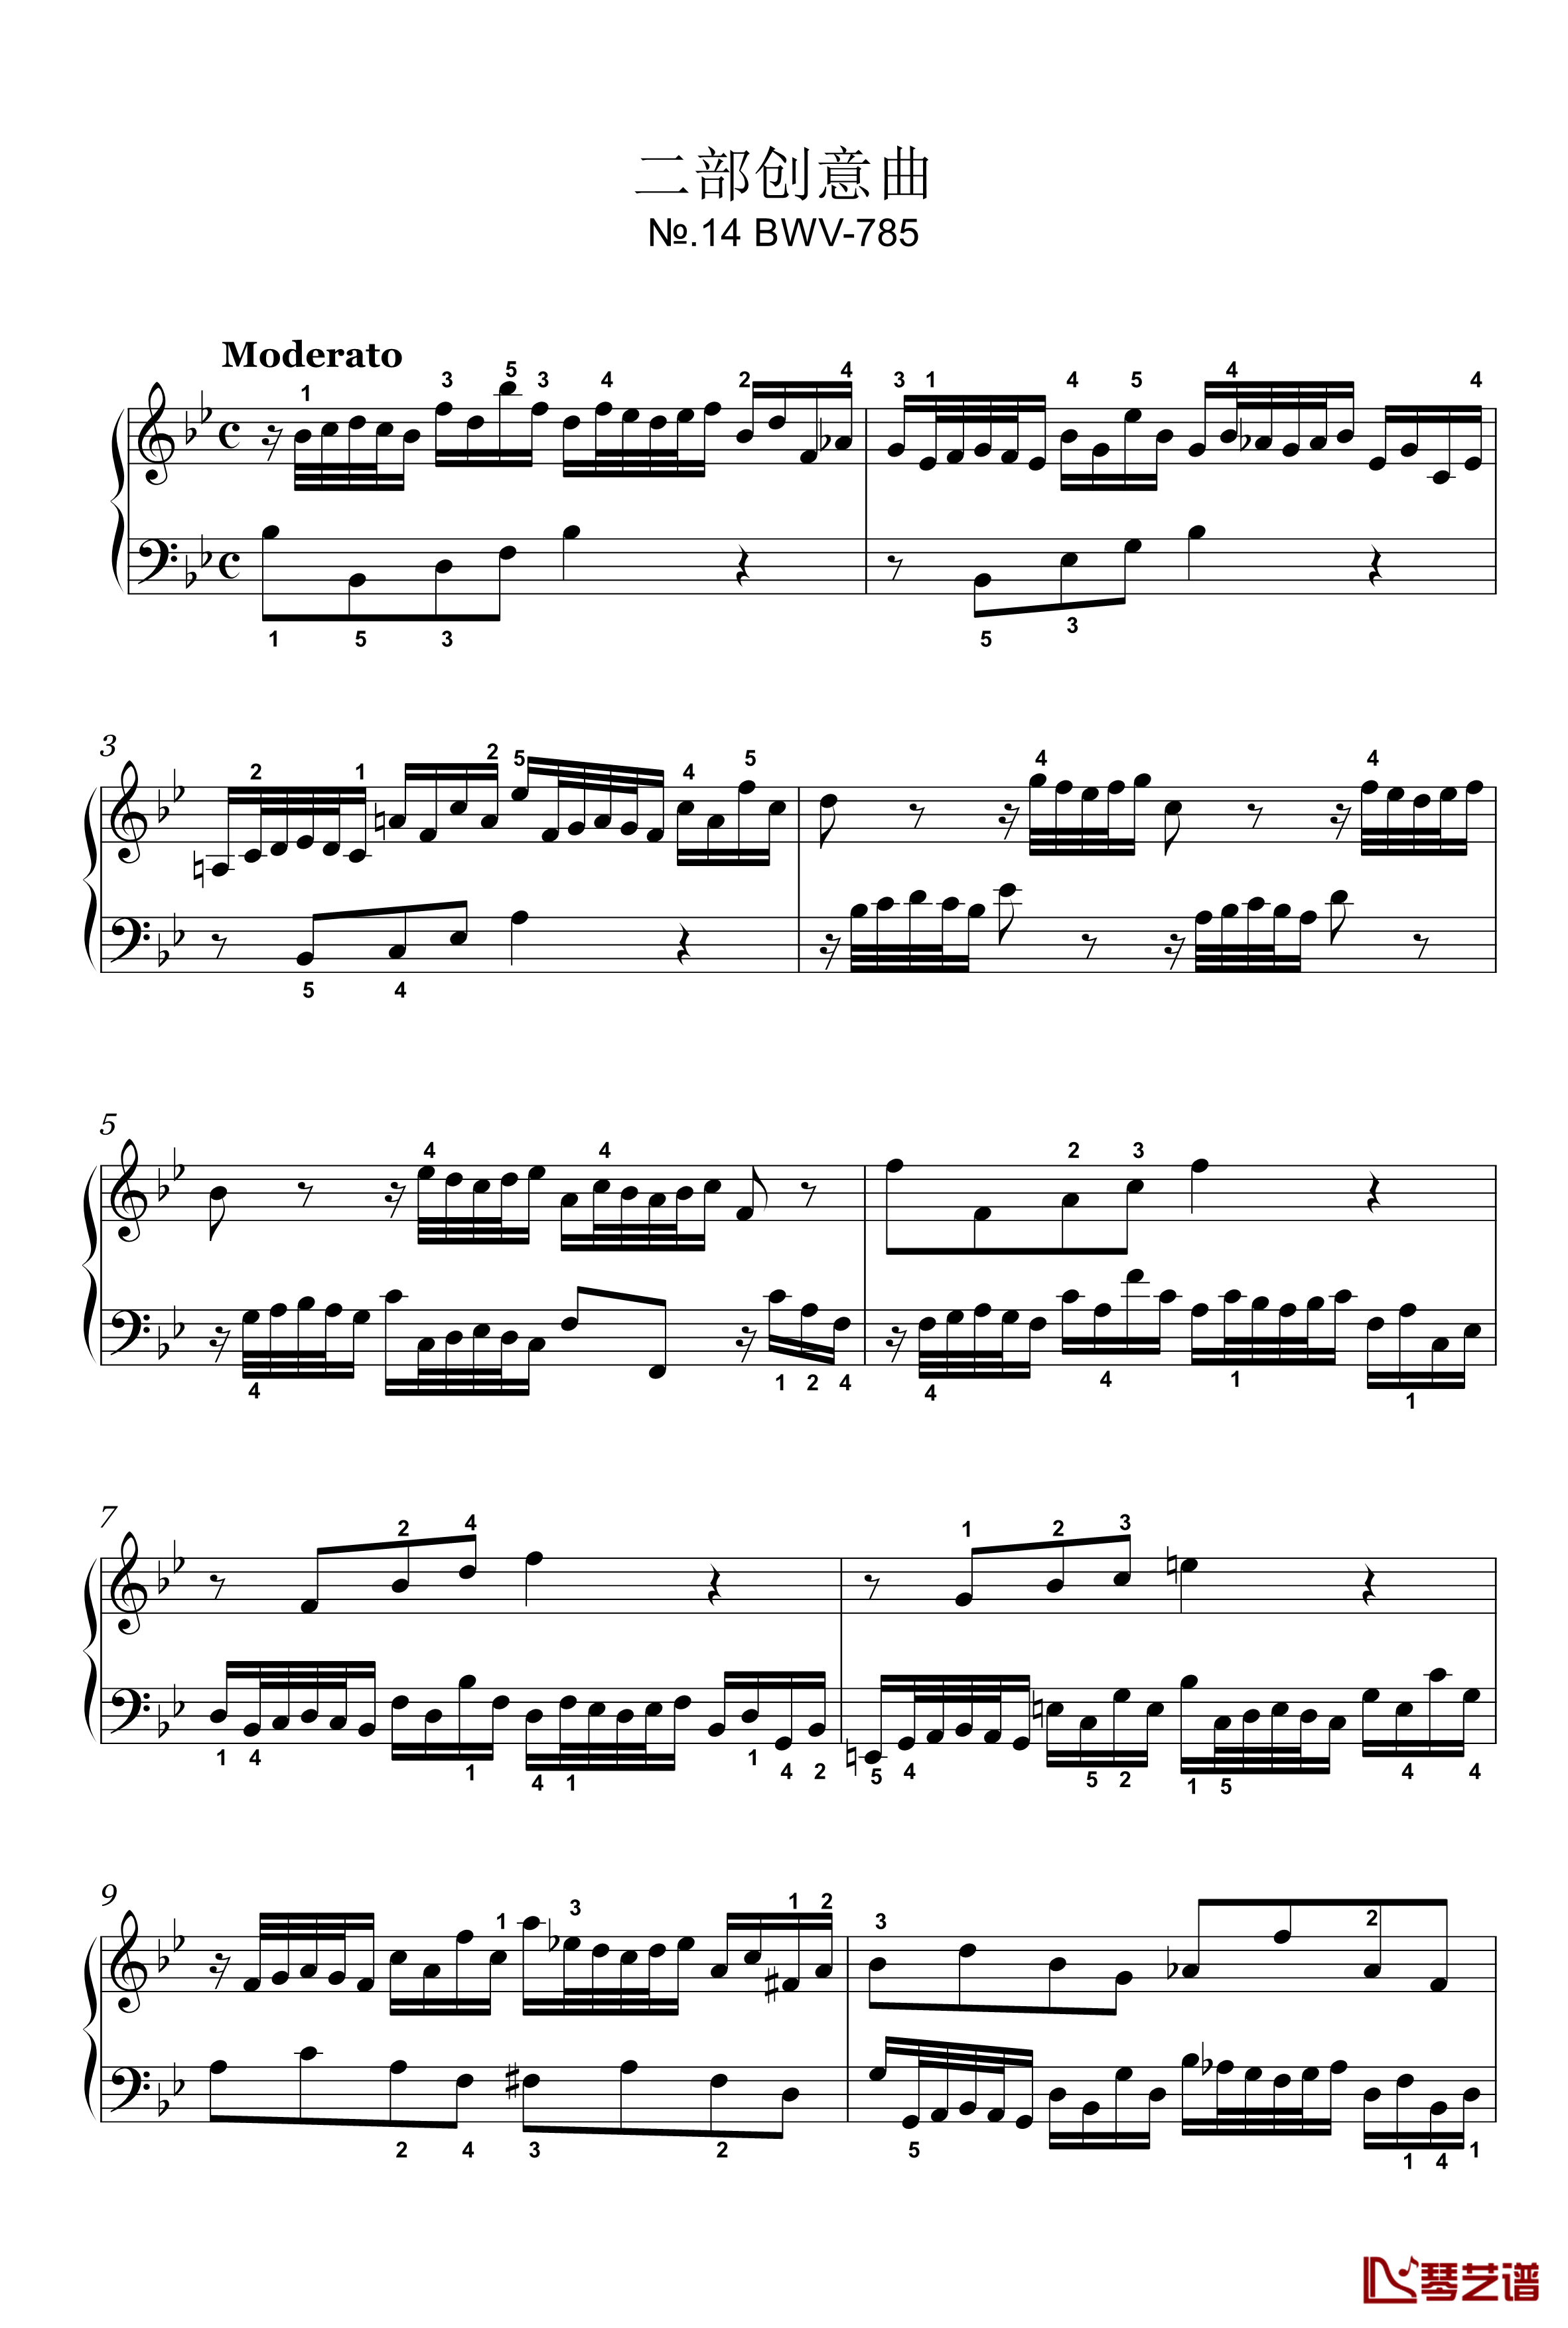 二部创意曲钢琴谱-14-BWV-785-雅克·奥芬巴赫1